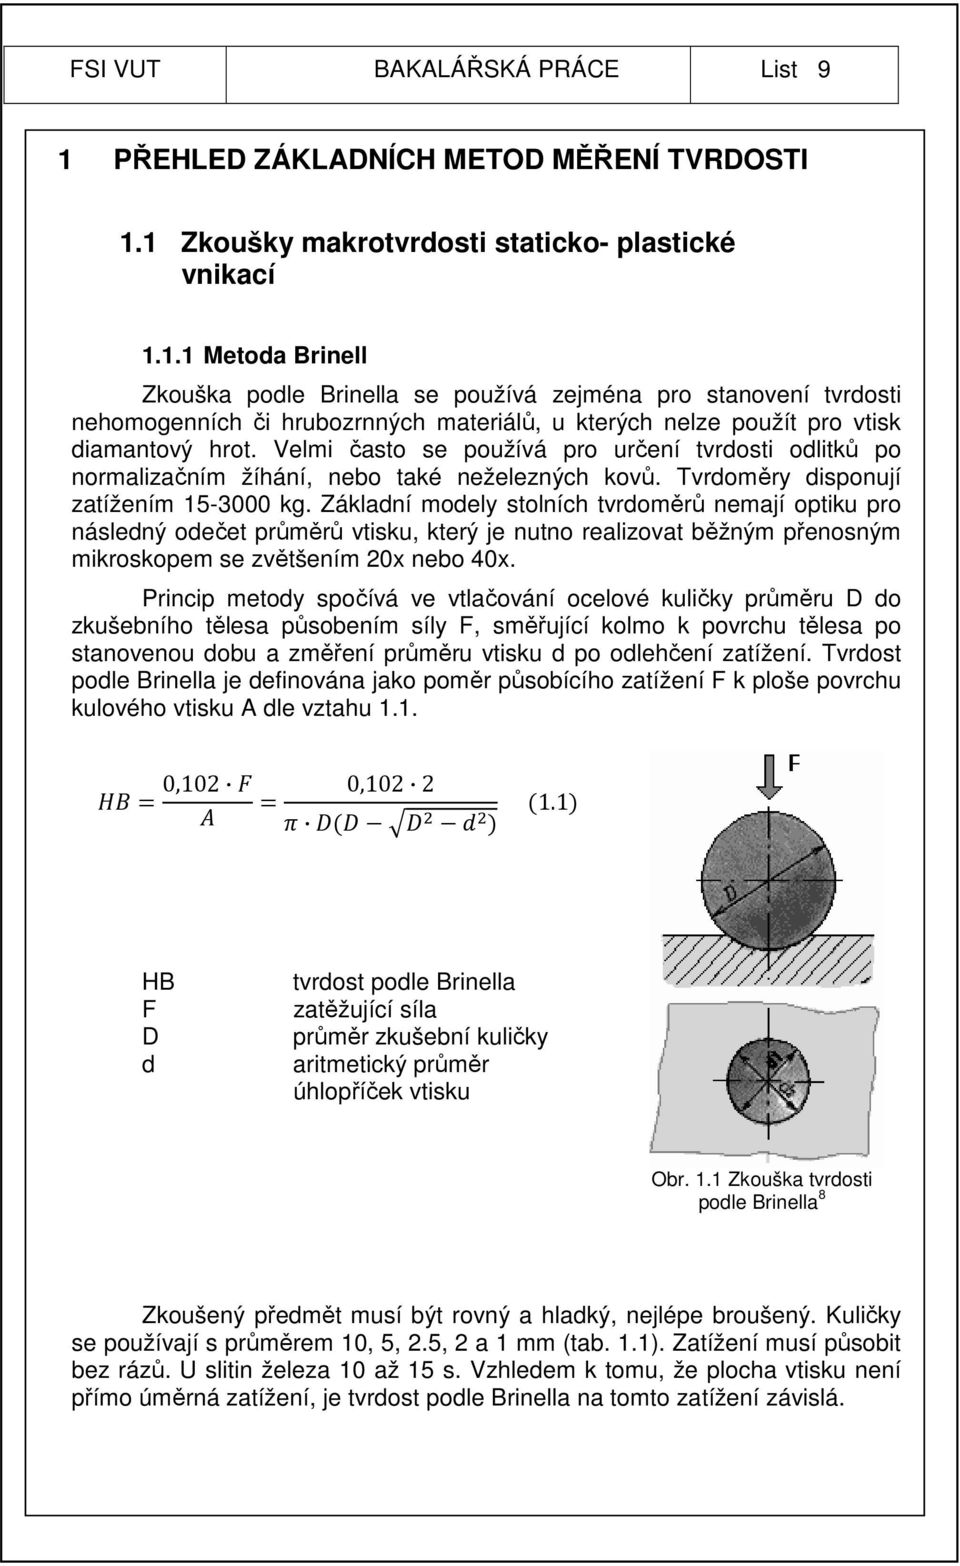 1 Zkoušky makrotvrdosti staticko- plastické vnikací 1.1.1 Metoda Brinell Zkouška podle Brinella se používá zejména pro stanovení tvrdosti nehomogenních či hrubozrnných materiálů, u kterých nelze použít pro vtisk diamantový hrot.